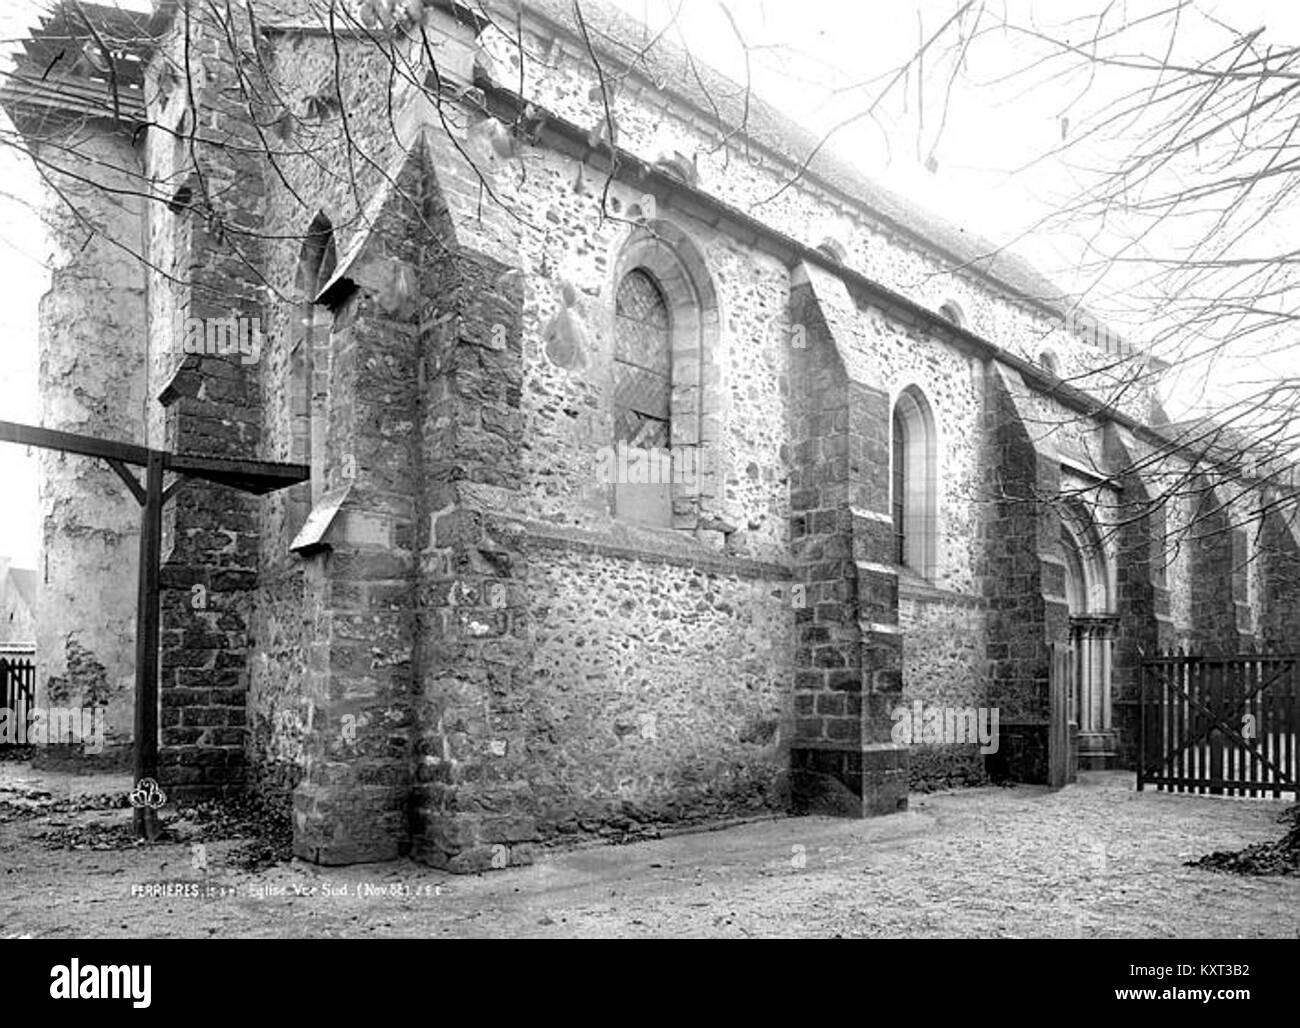 Eglise Saint-Rémy-Vue intérieure - Ferrières-Médiathèque de l'architecture et du patrimoine - APMH 00010984 Stockfoto